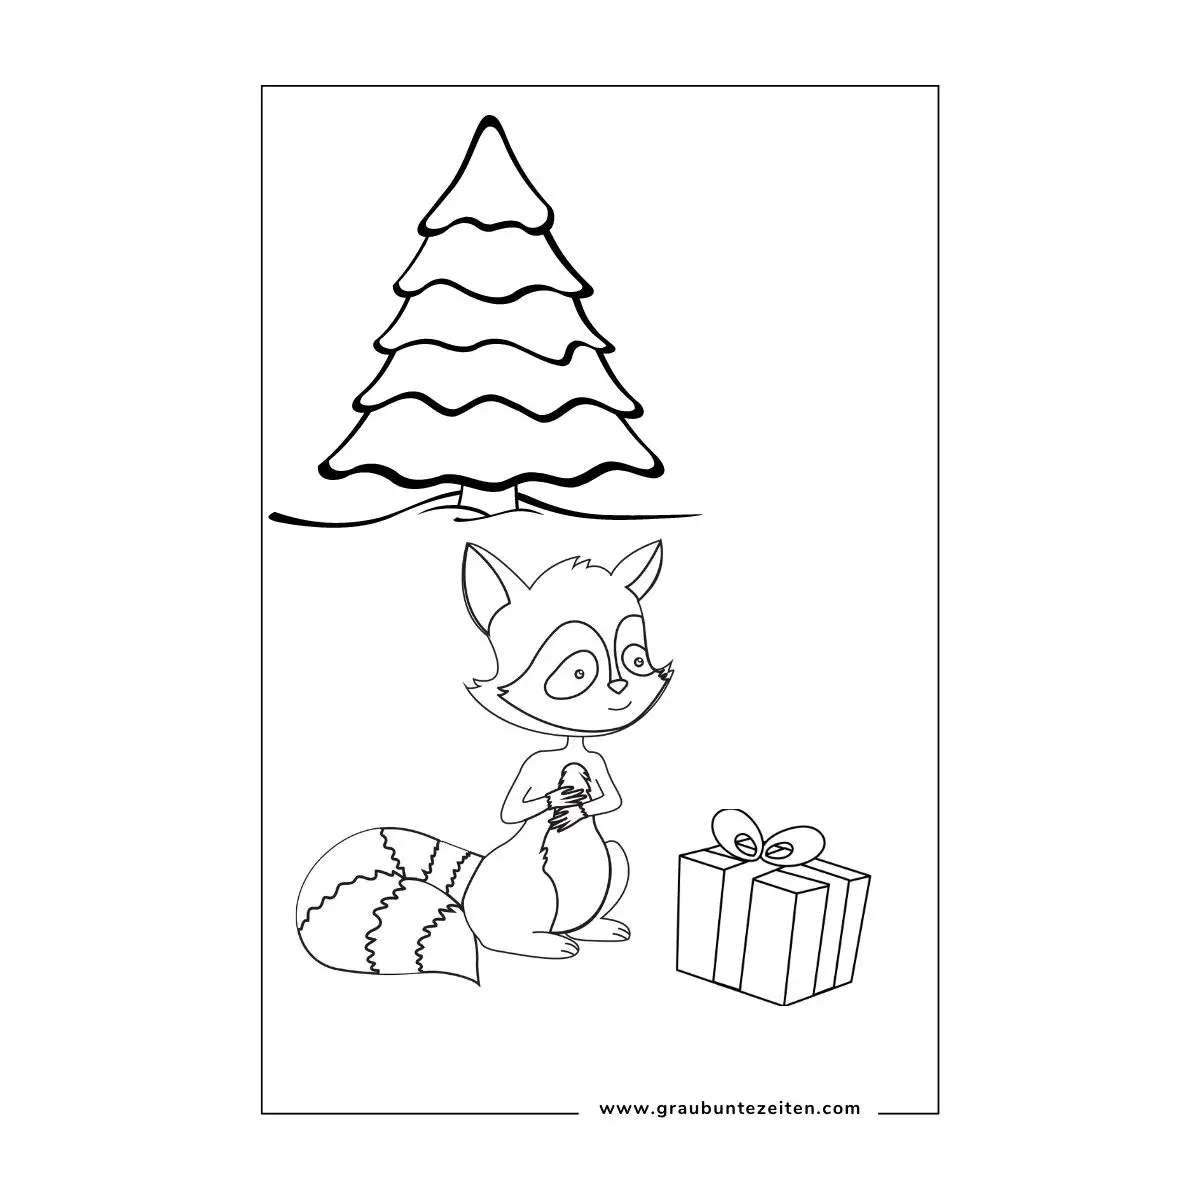 Ausmalbilder Weihnachten Tiere. Ein Tannenbaum im Wald. Ein Fuchs mit einem Weihnachtsgeschenkpaket.